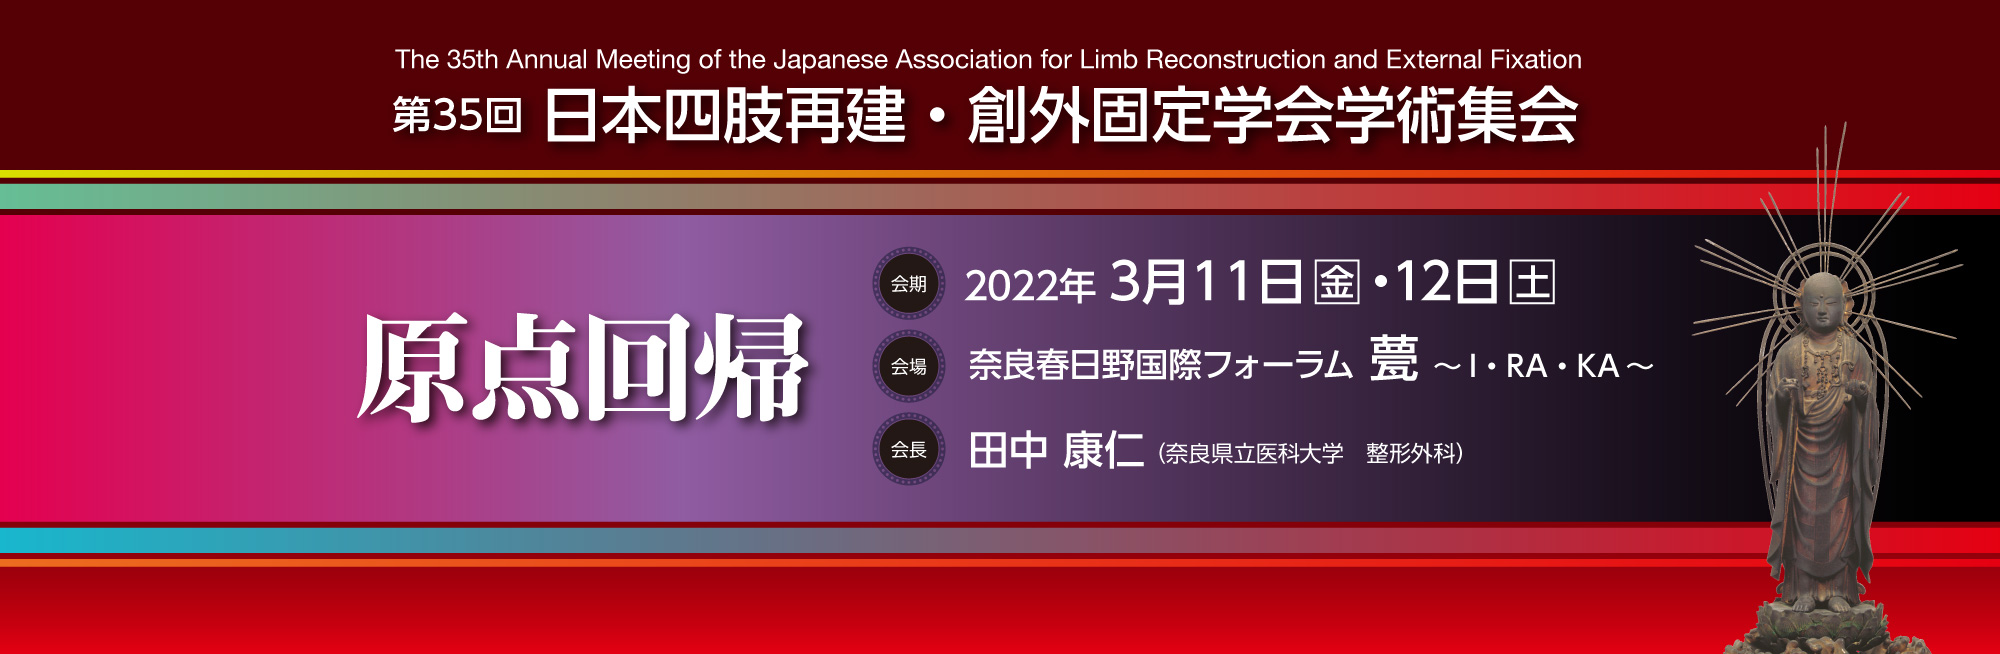 第35回 日本四肢再建・創外固定学会学術集会